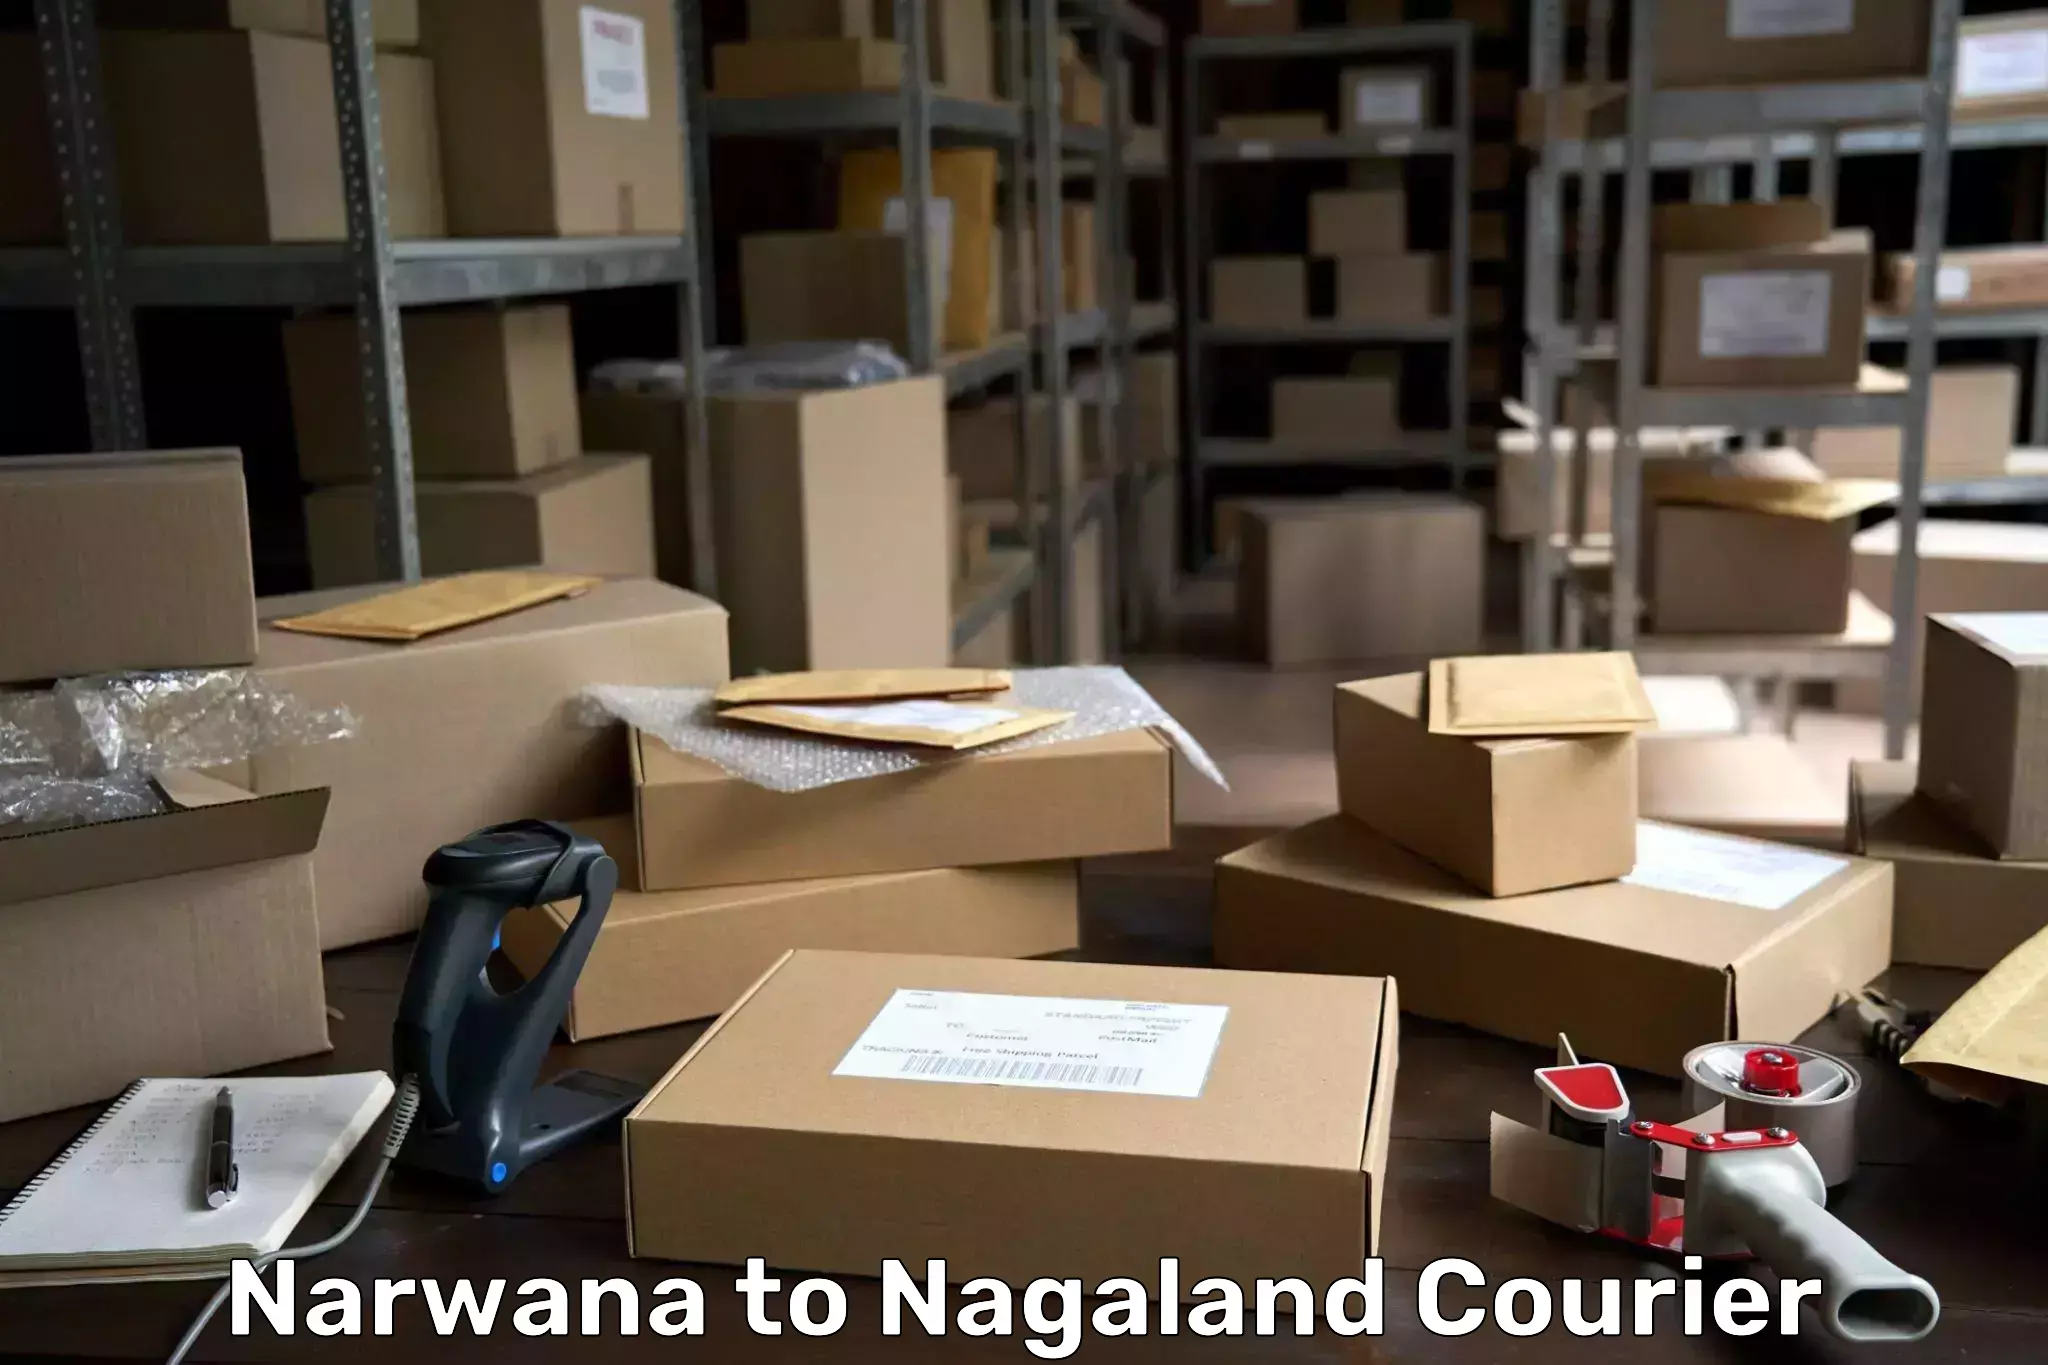 Courier service partnerships Narwana to Nagaland